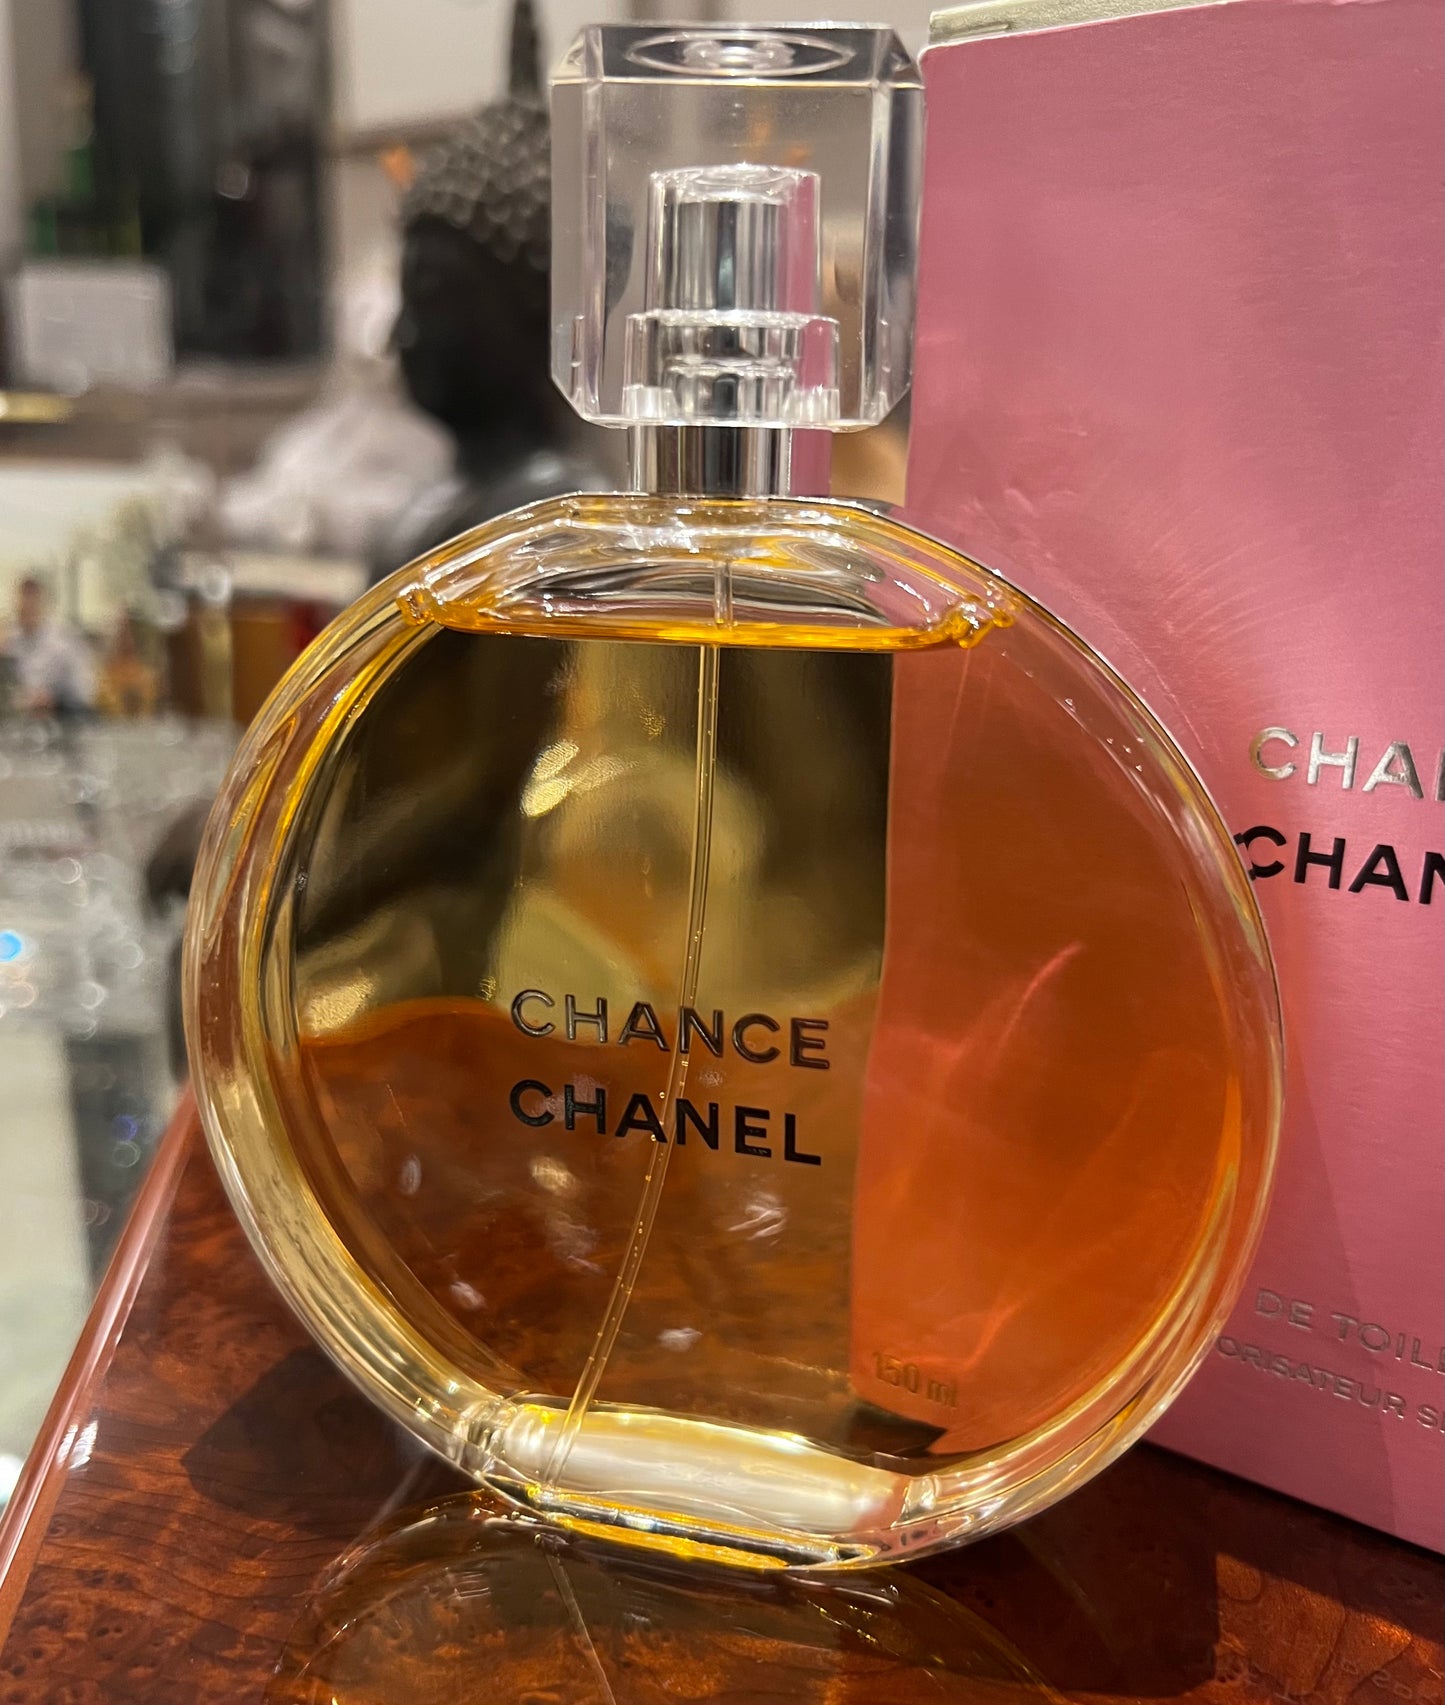 Chanel Chance Eau Tendre 3.4 oz Eau de Toilette Spray